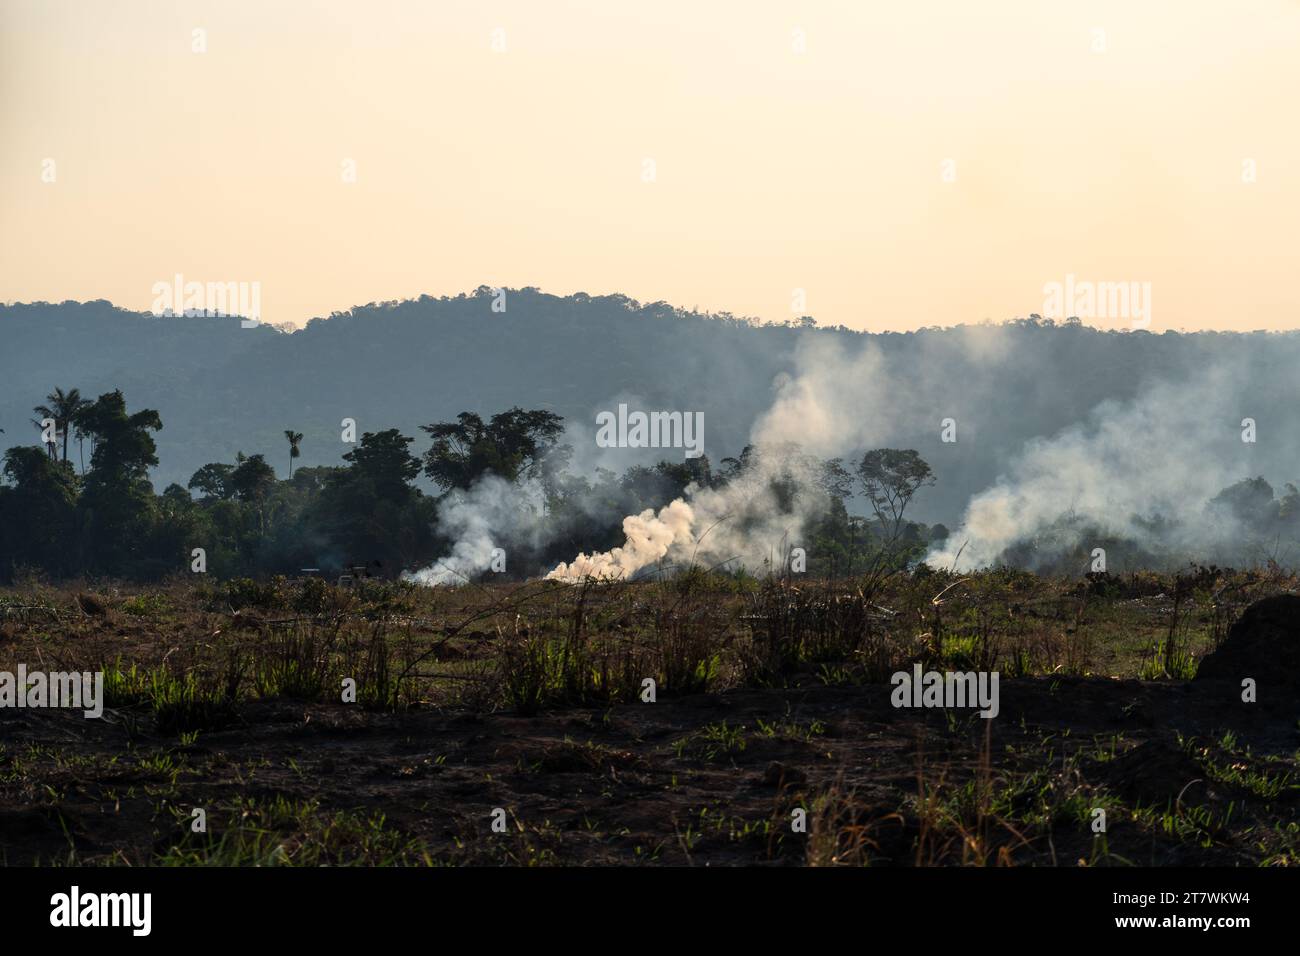 Arbres de forêt tropicale amazonienne sur le feu avec la fumée dans la déforestation illégale à la zone ouverte pour l'agriculture agricole . Concept de co2, environnement, écologie, climat Banque D'Images